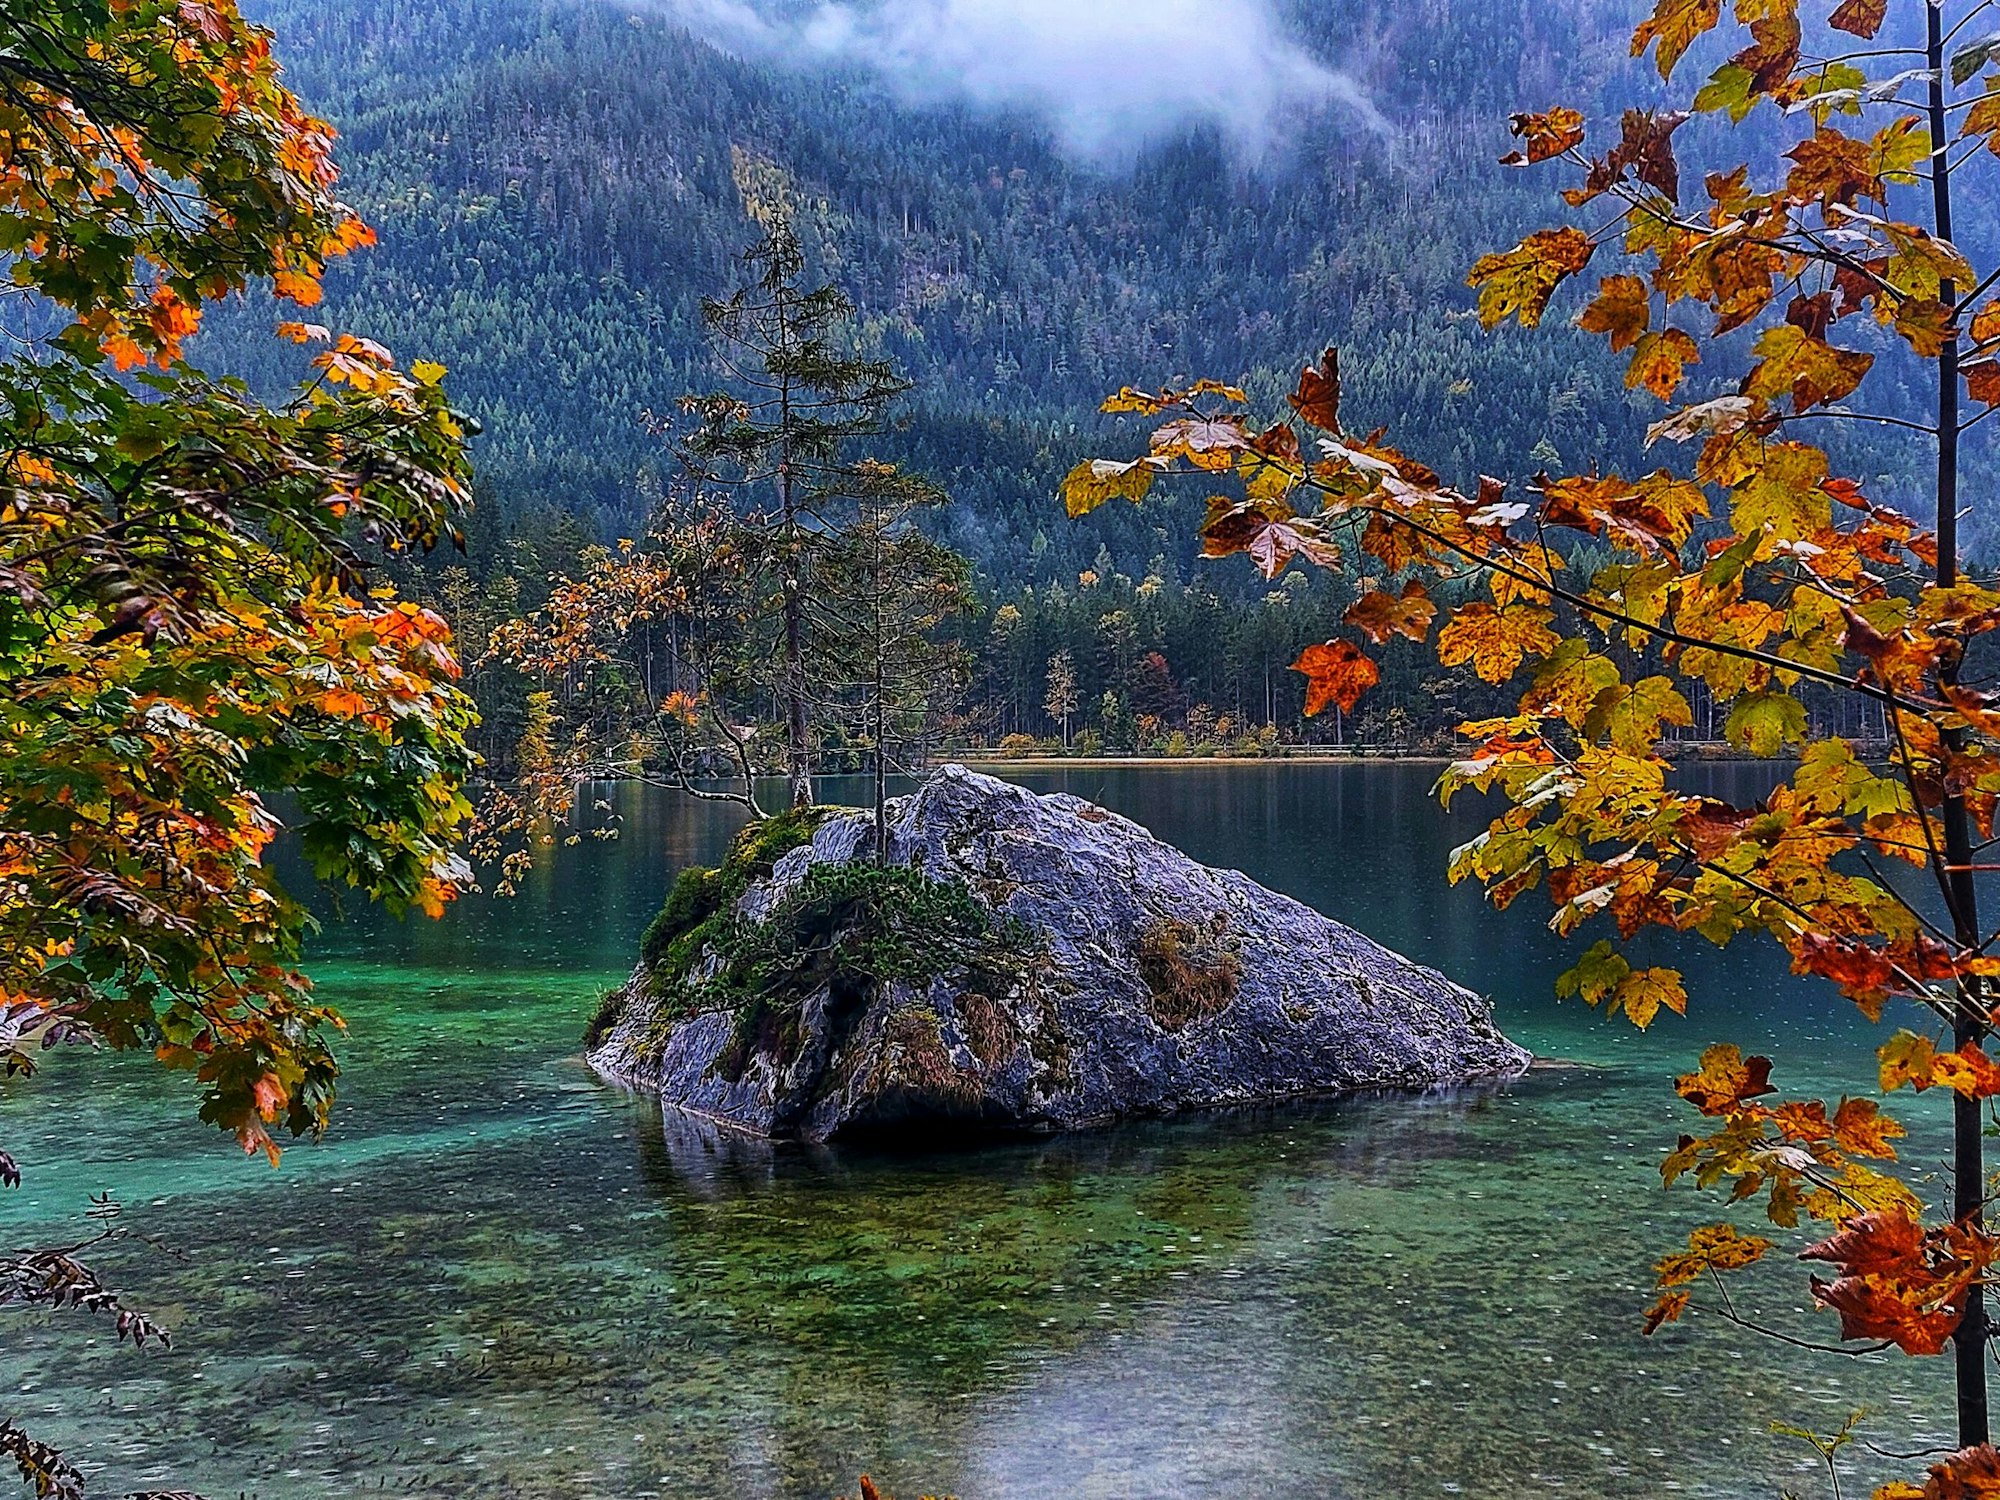 Ein farbenprächtiger See, in der Mitte liegt ein Fels mit Baum darauf, hinten ein Wald, rechts und links im Vordergrund bunte Herbstbäume.